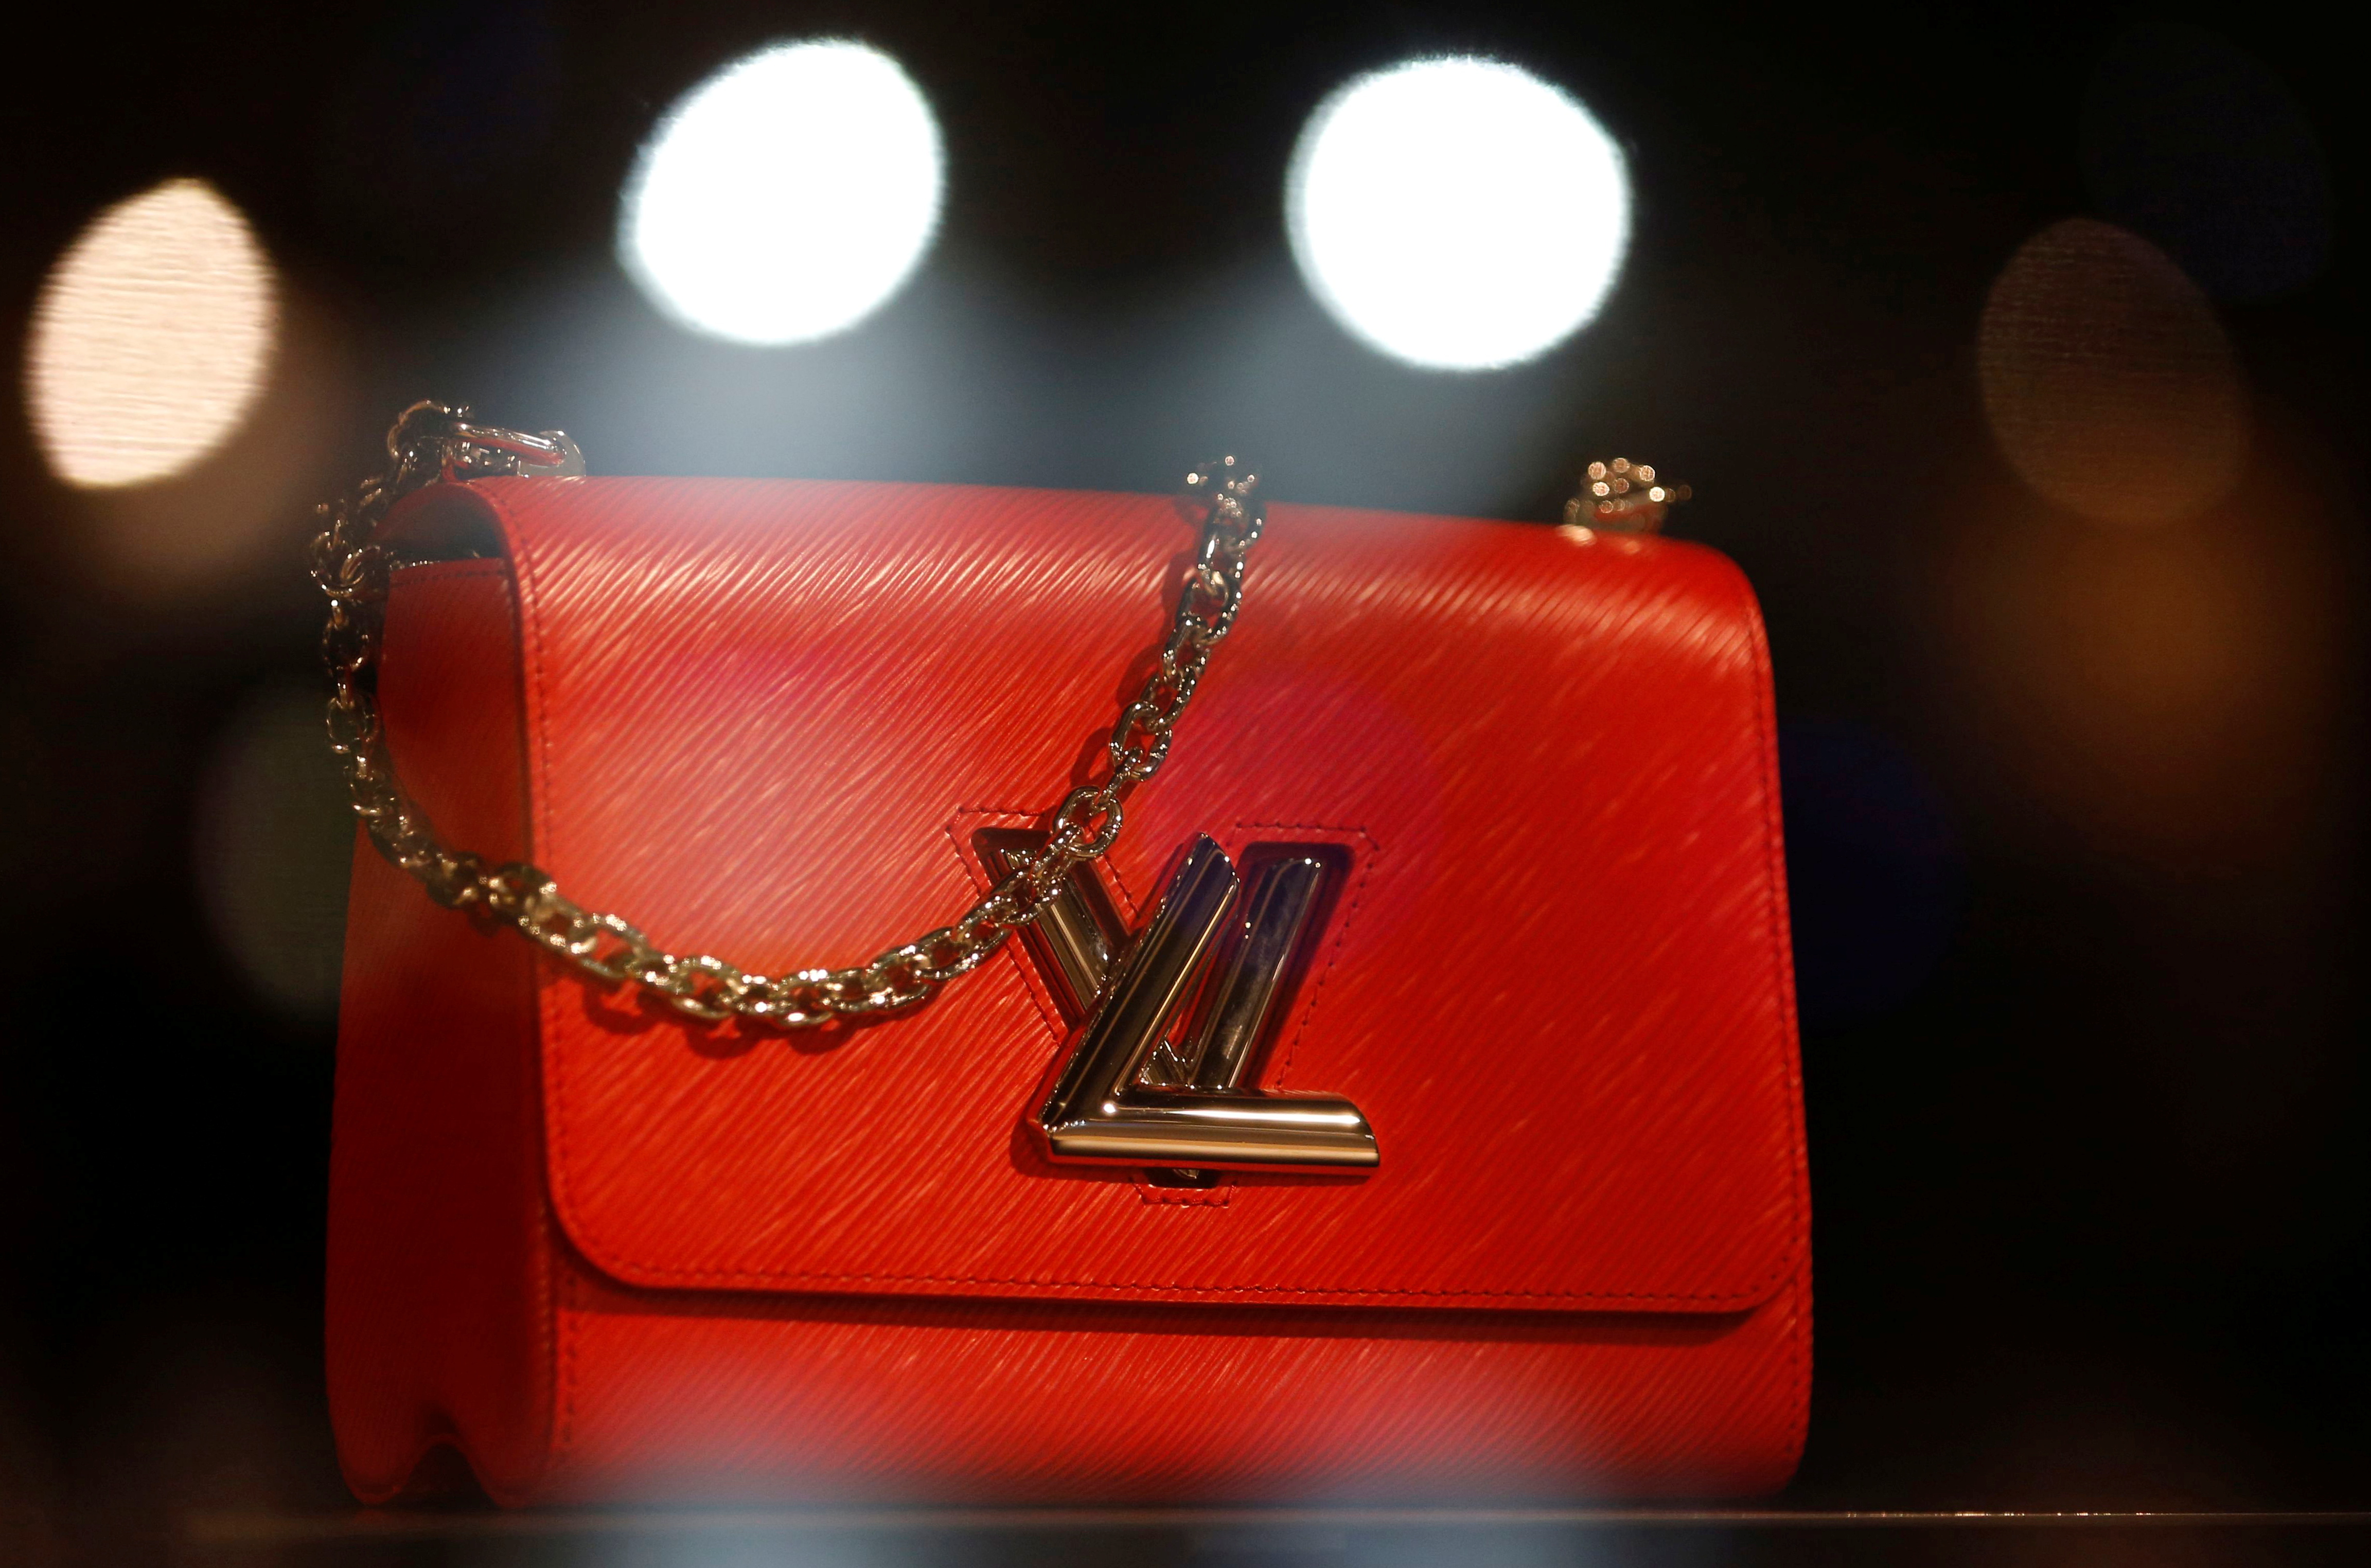 Louis Vuitton registró en el 2022 la mayor rentabilidad de su historia: €  14.000 M.